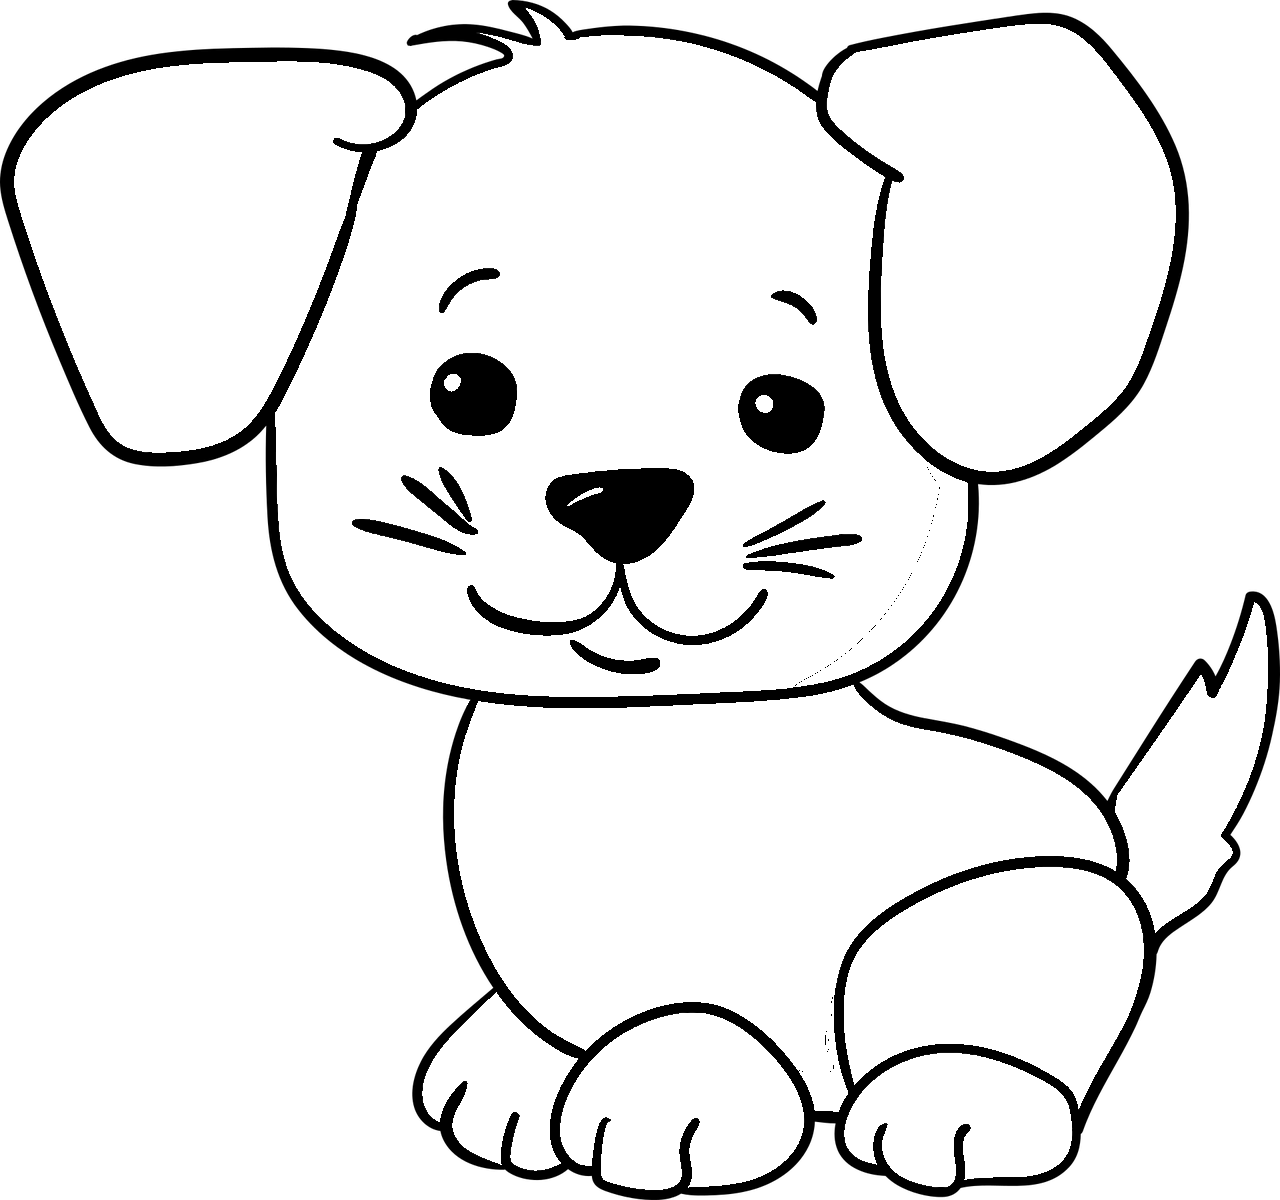 Disegno da colorare di cucciolo di cane per bambini